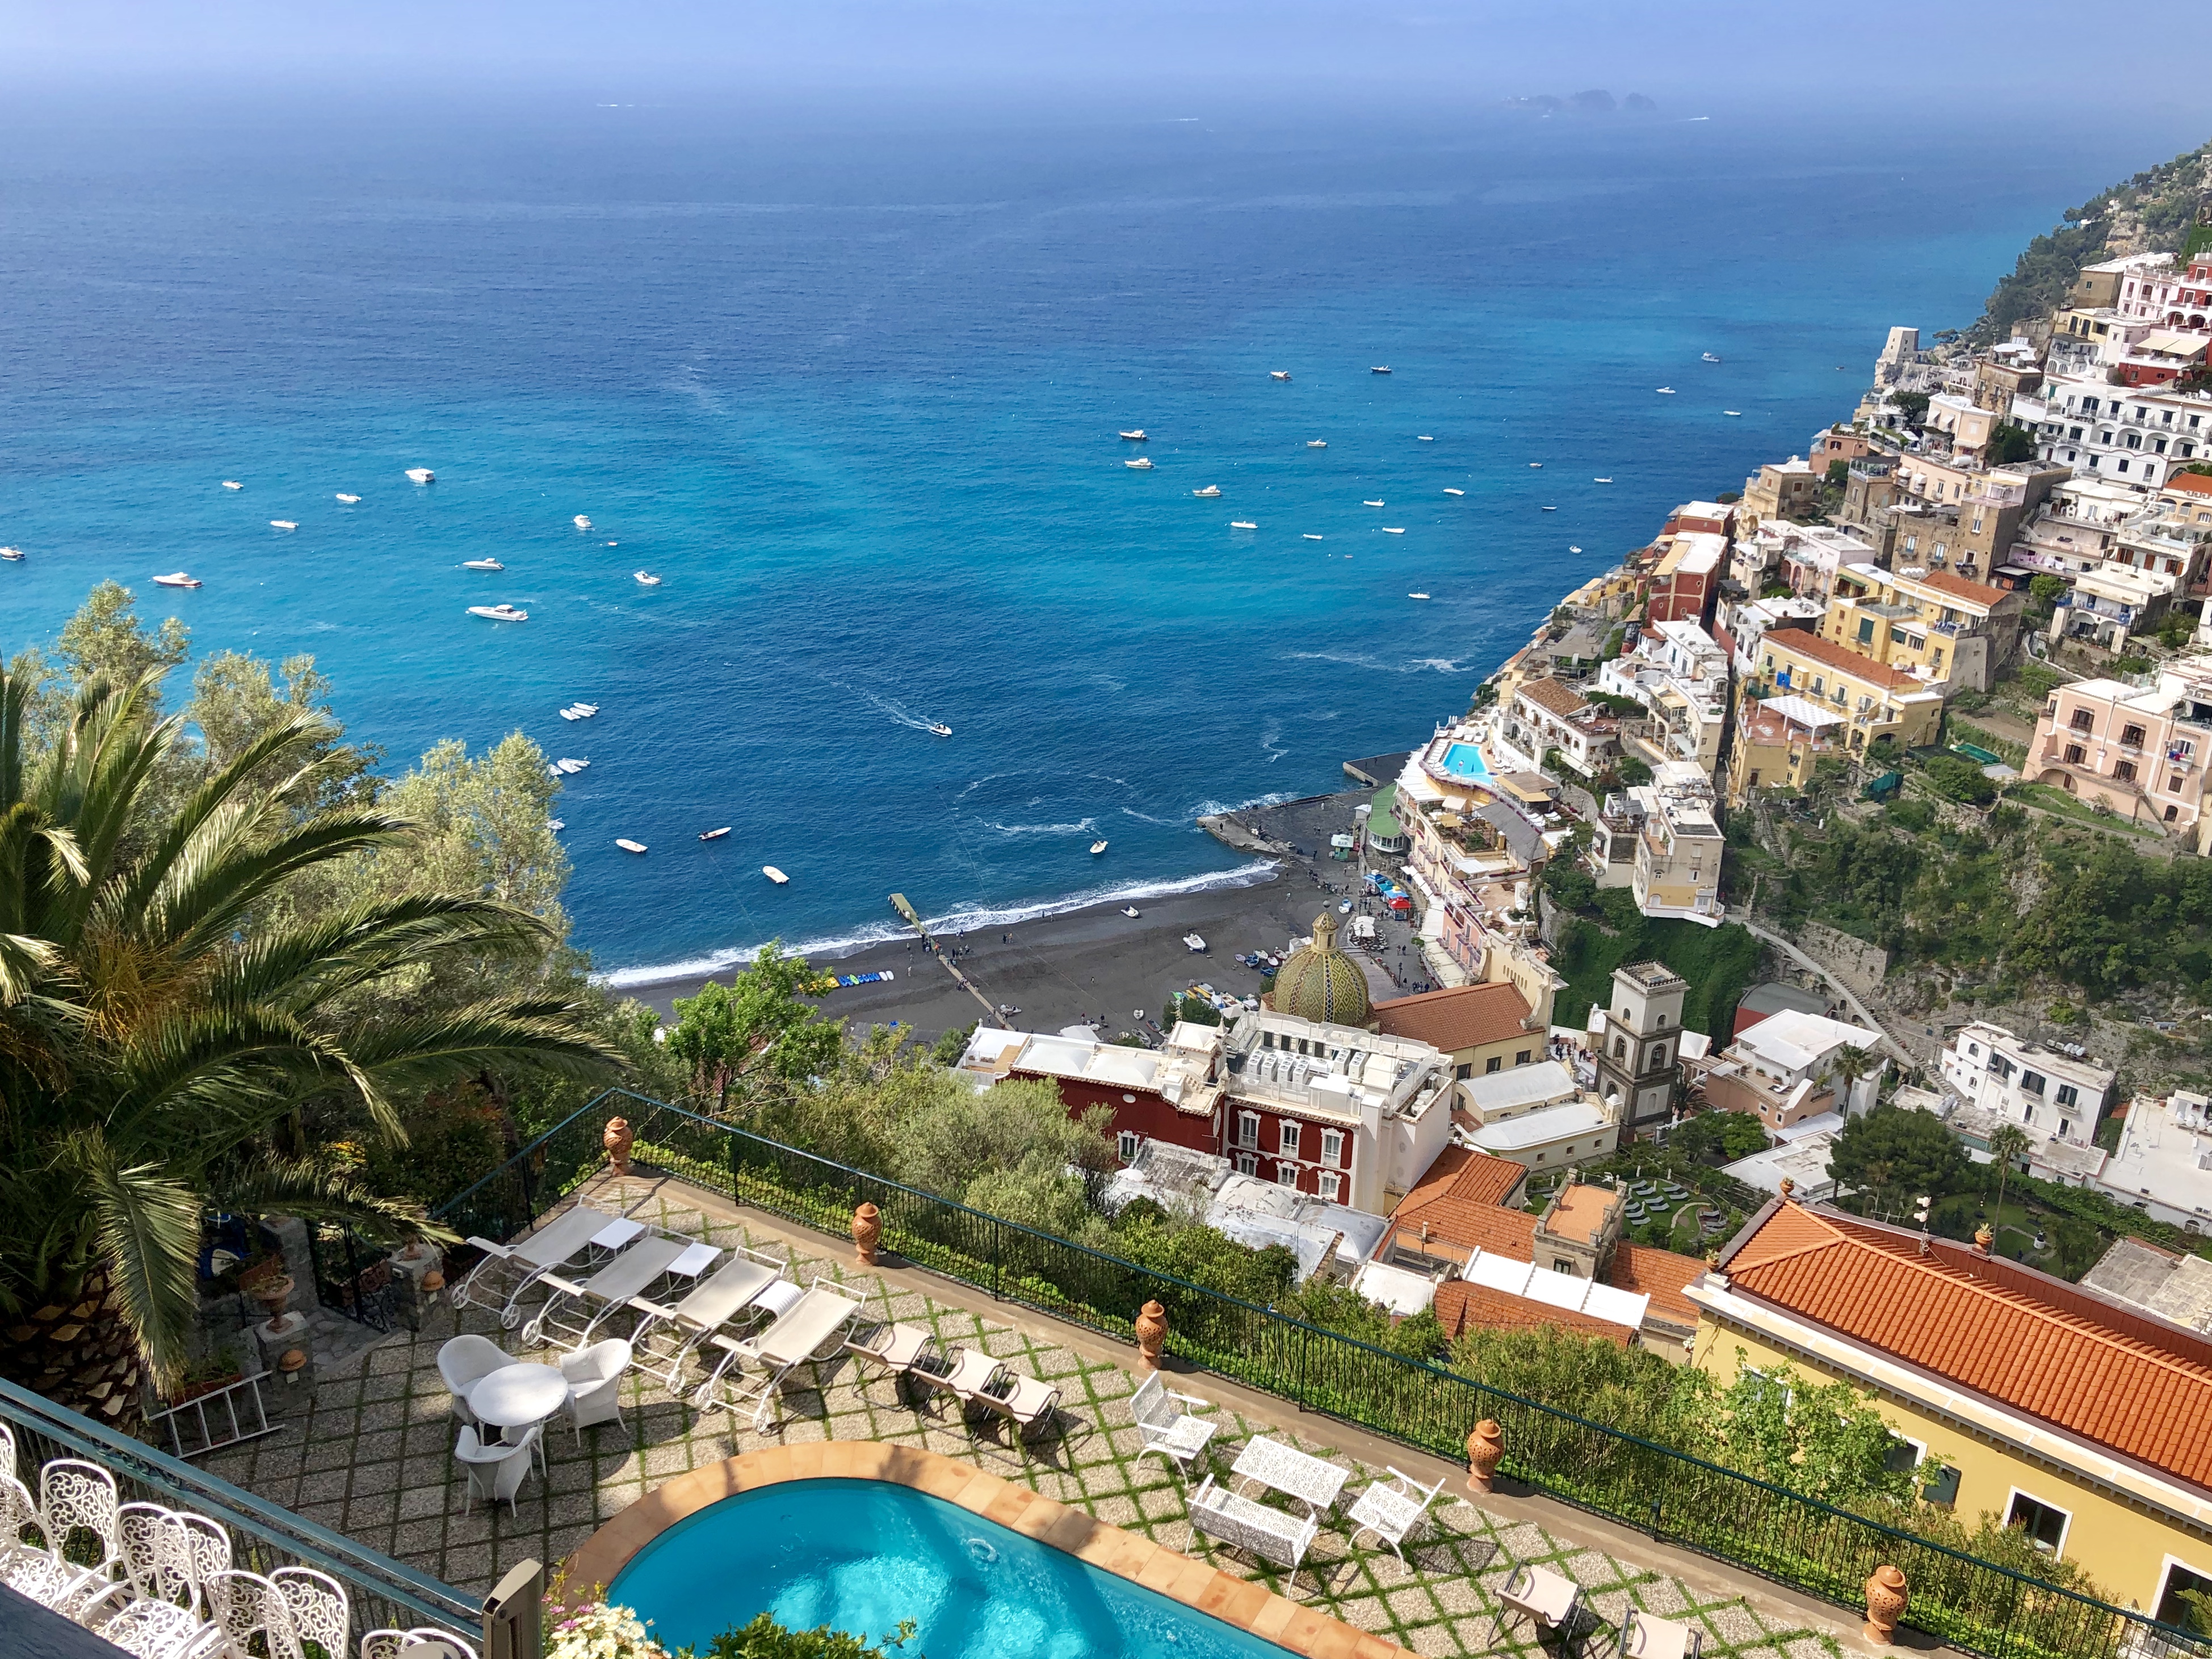 How to Plan a Trip to the Amalfi Coast